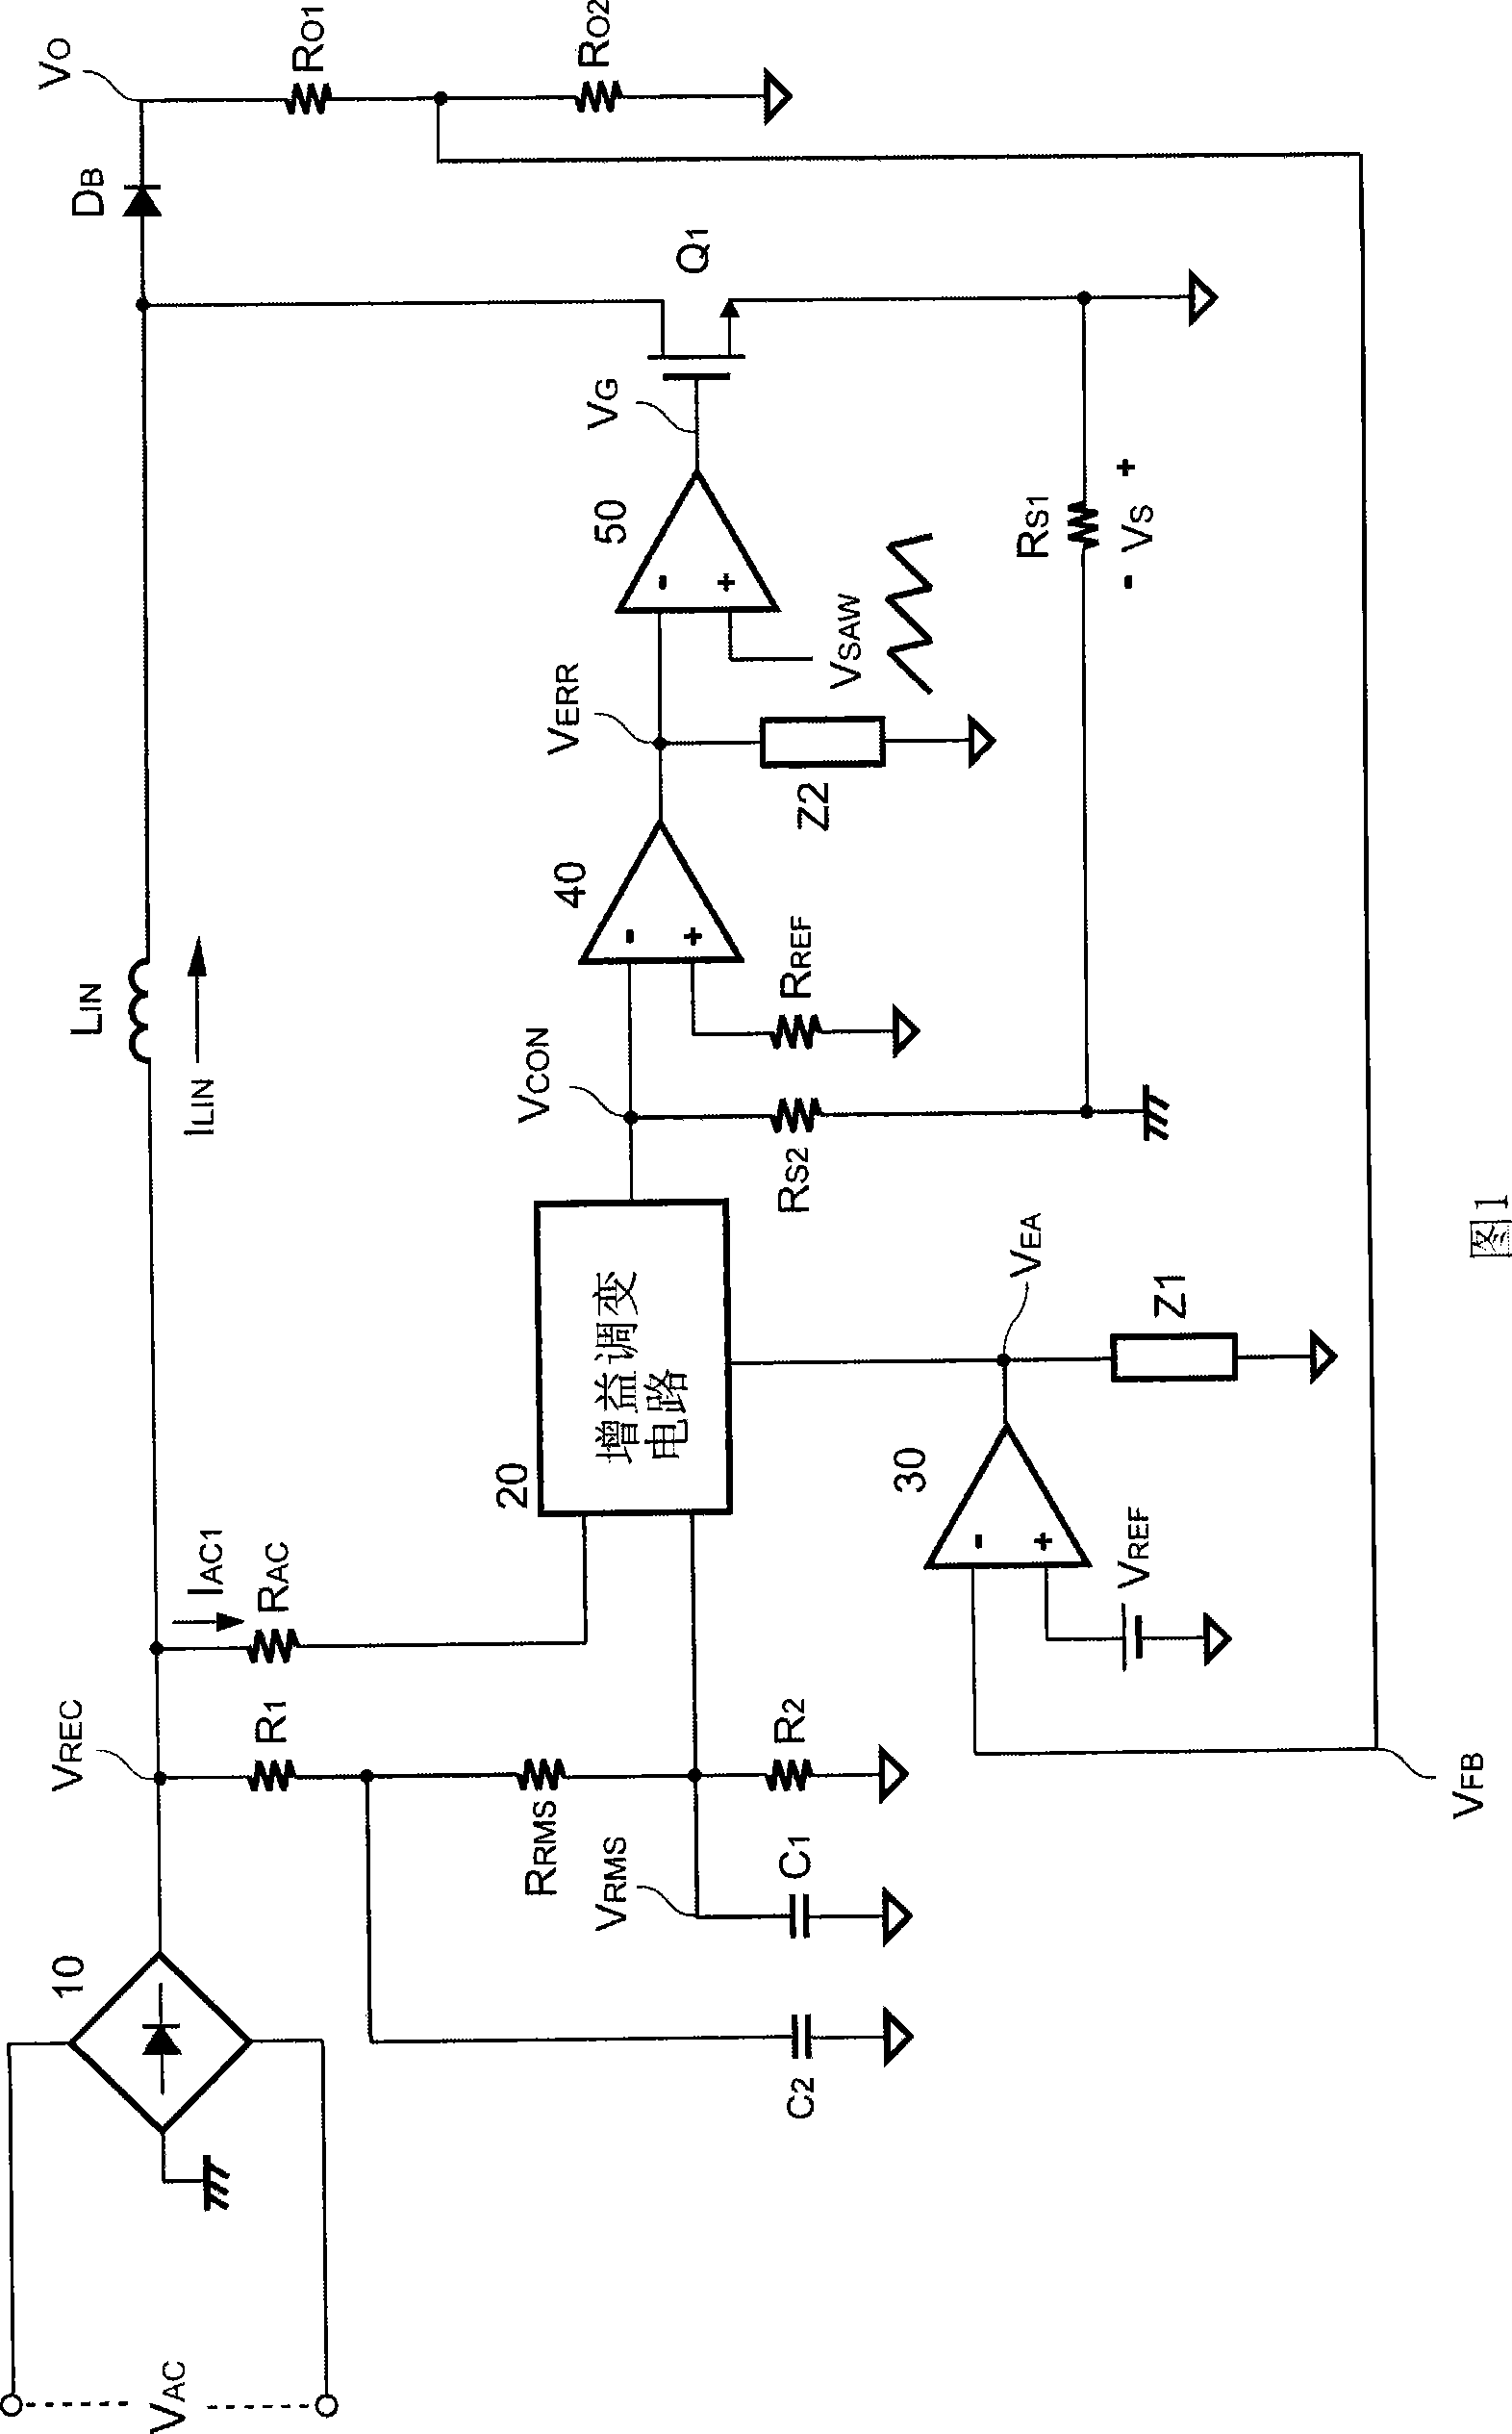 Control circuit for power factor corrector